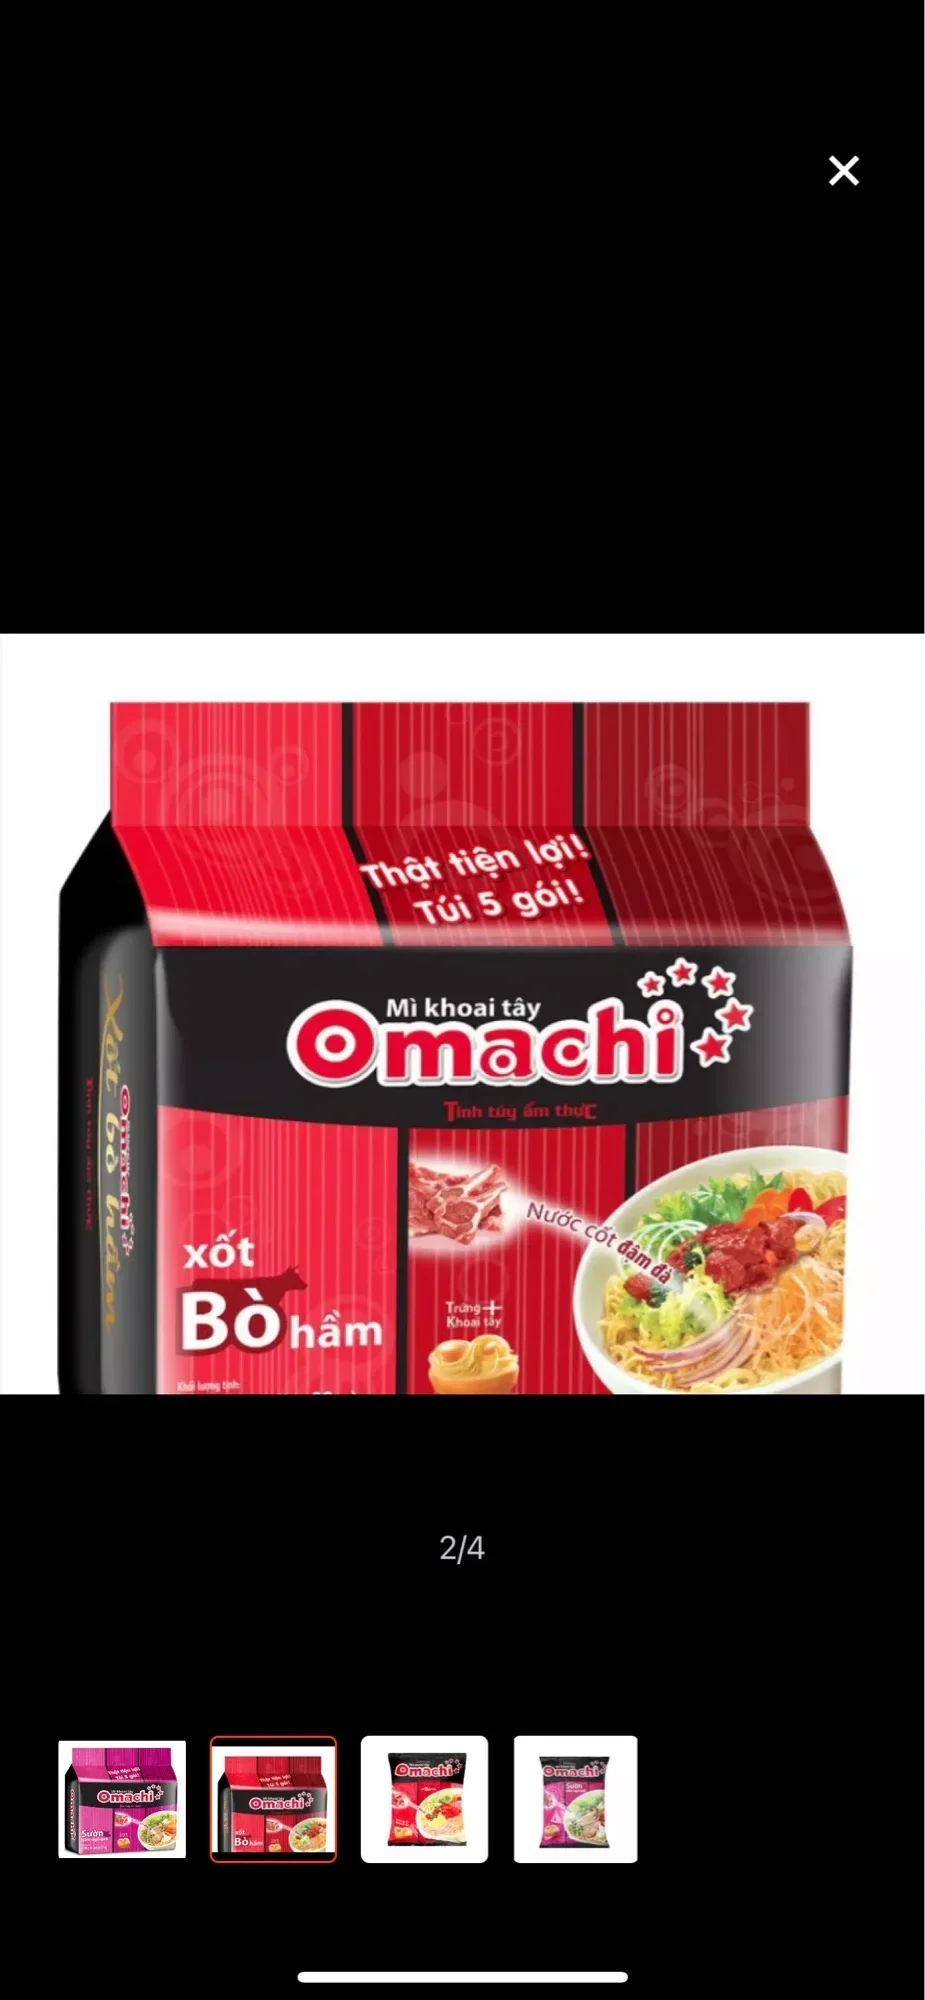 Mì omachi xốt bò hầm - Túi 5 Gói Mì Khoai Tây Omachi 80g